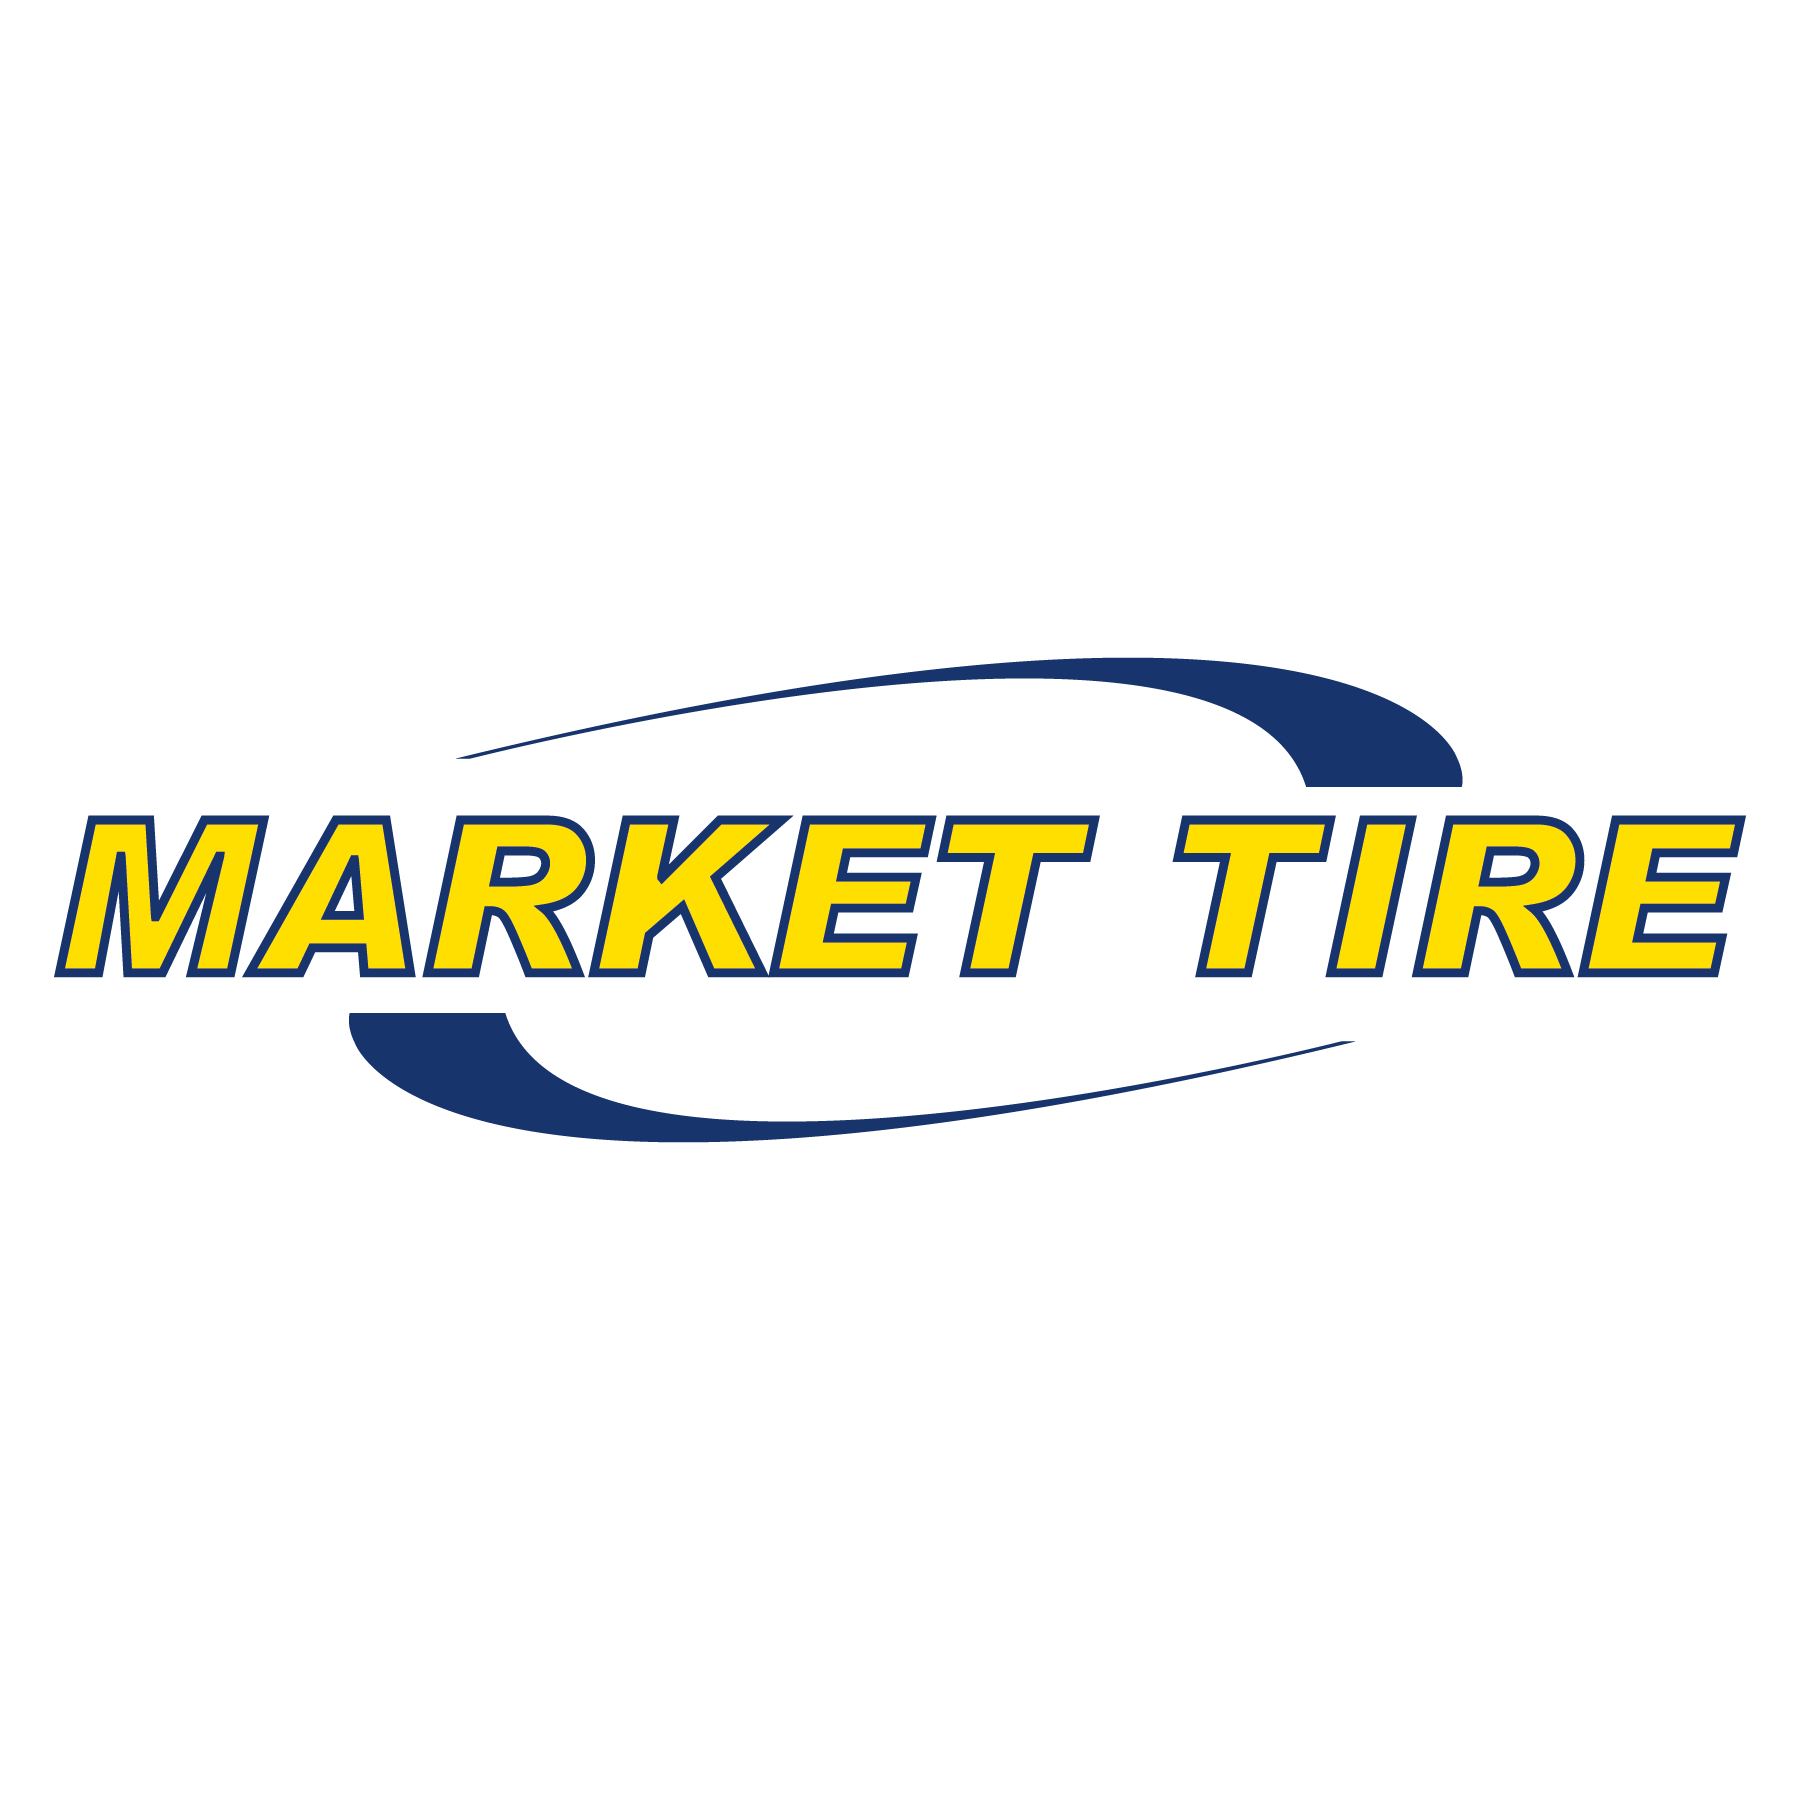 Market Tire - Accessoires et matériel pour vendeurs de pneus